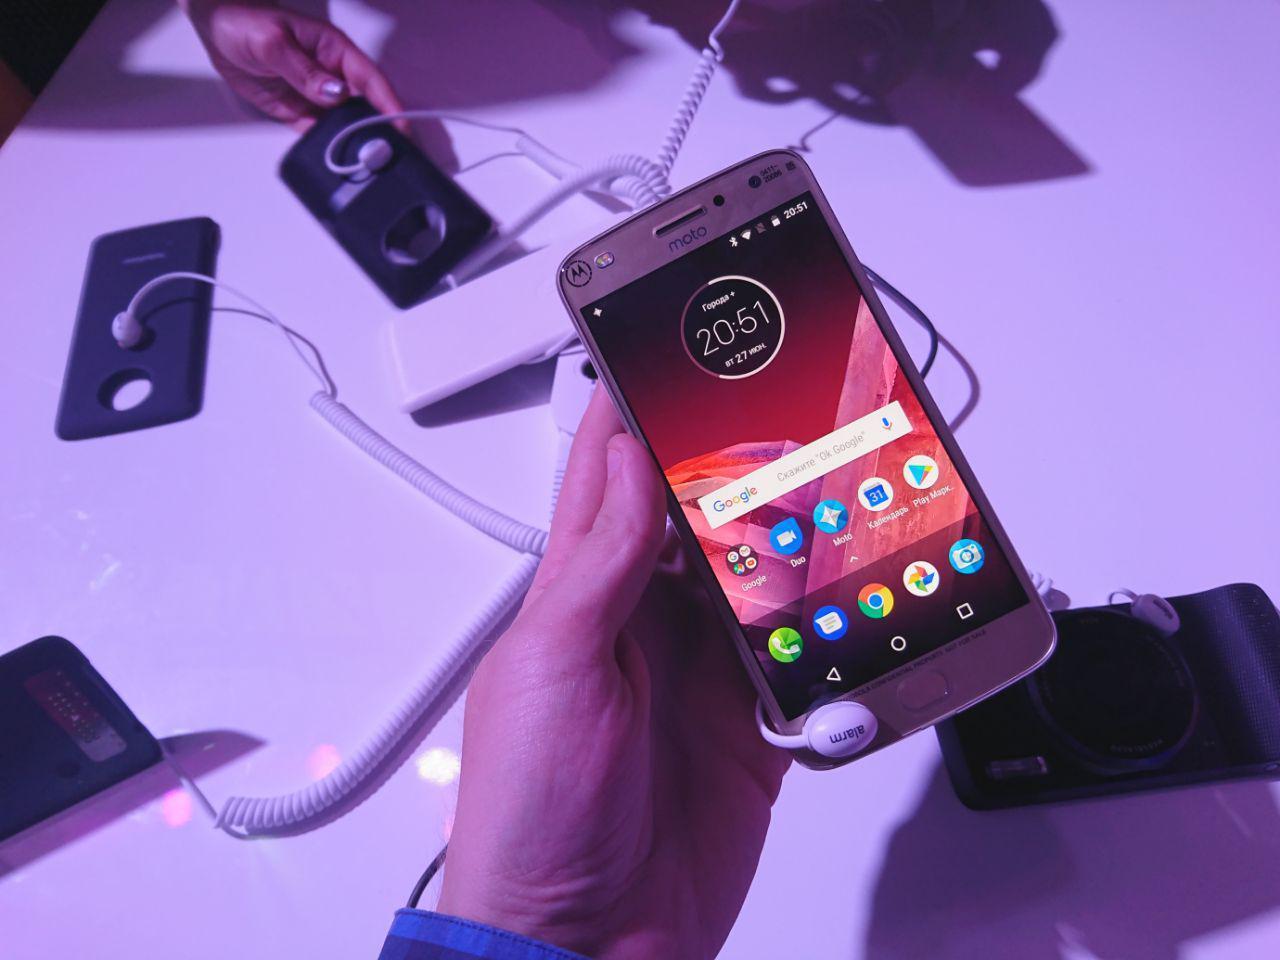 Motorola Moto Z2 Play официально представлен в России (photo 2017 06 27 20 52 42)